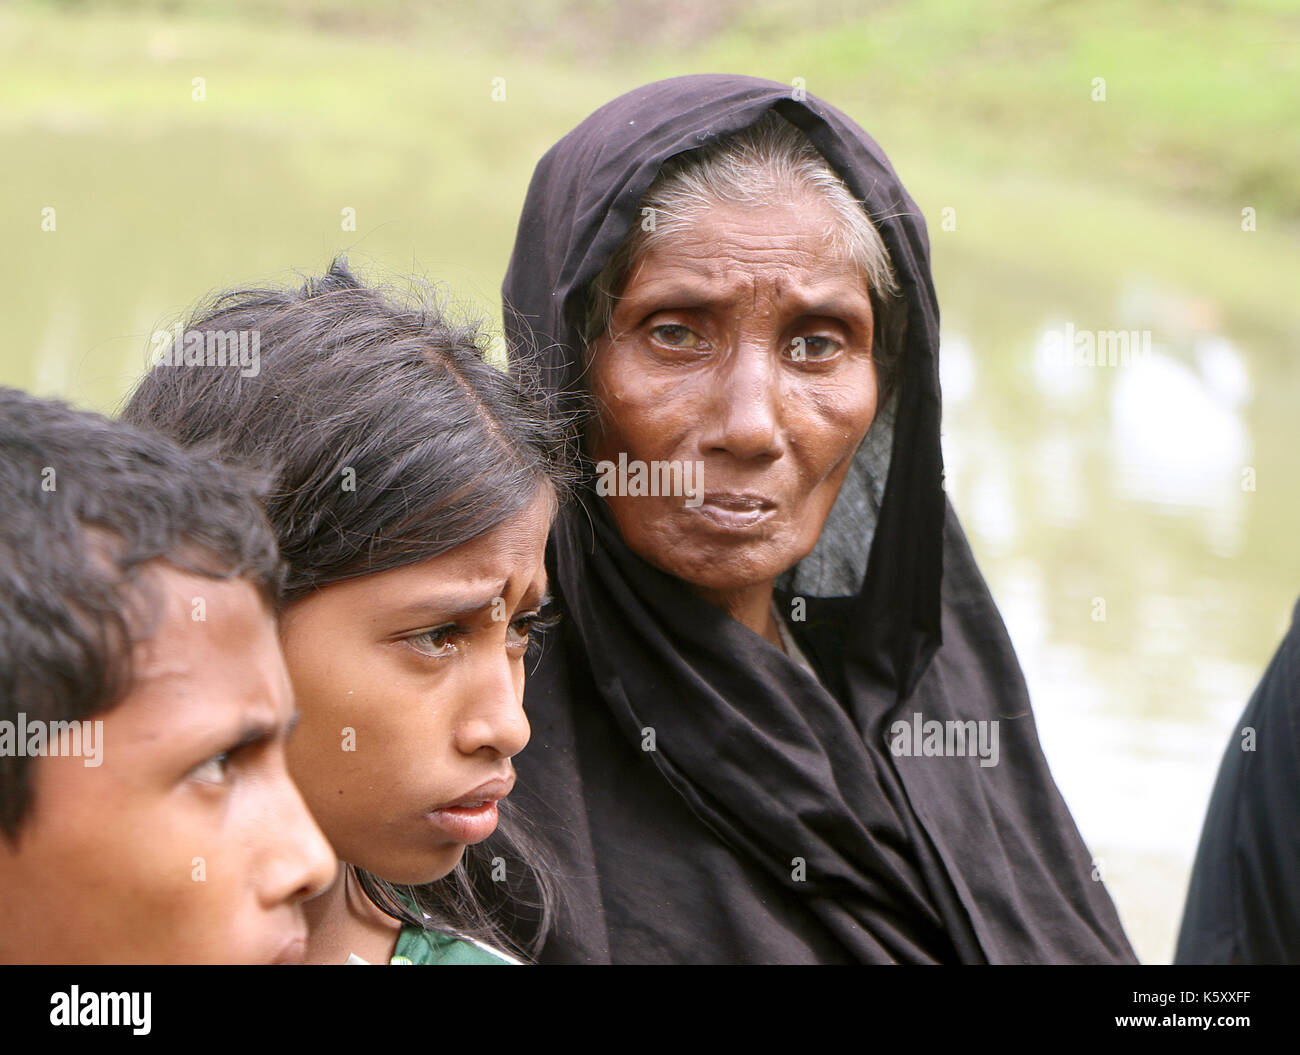 Kutupalong, Bangladesh. 8 Sep, 2017. questa donna anziana (m) stava cercando stanchi di camminare e la ricerca di cibo come si recò dal Myanmar·s Stato di Rakhine per sfuggire disordini nella sua casa in cerca di rifugio in kutupalong, Bangladesh, 8 settembre 2017. Decine di migliaia di persone alluvioni in Bangladesh dopo la violenza scoppiata nel Myanmar·s Stato di Rakhine. photo: nazrul islam/dpa/alamy live news Foto Stock